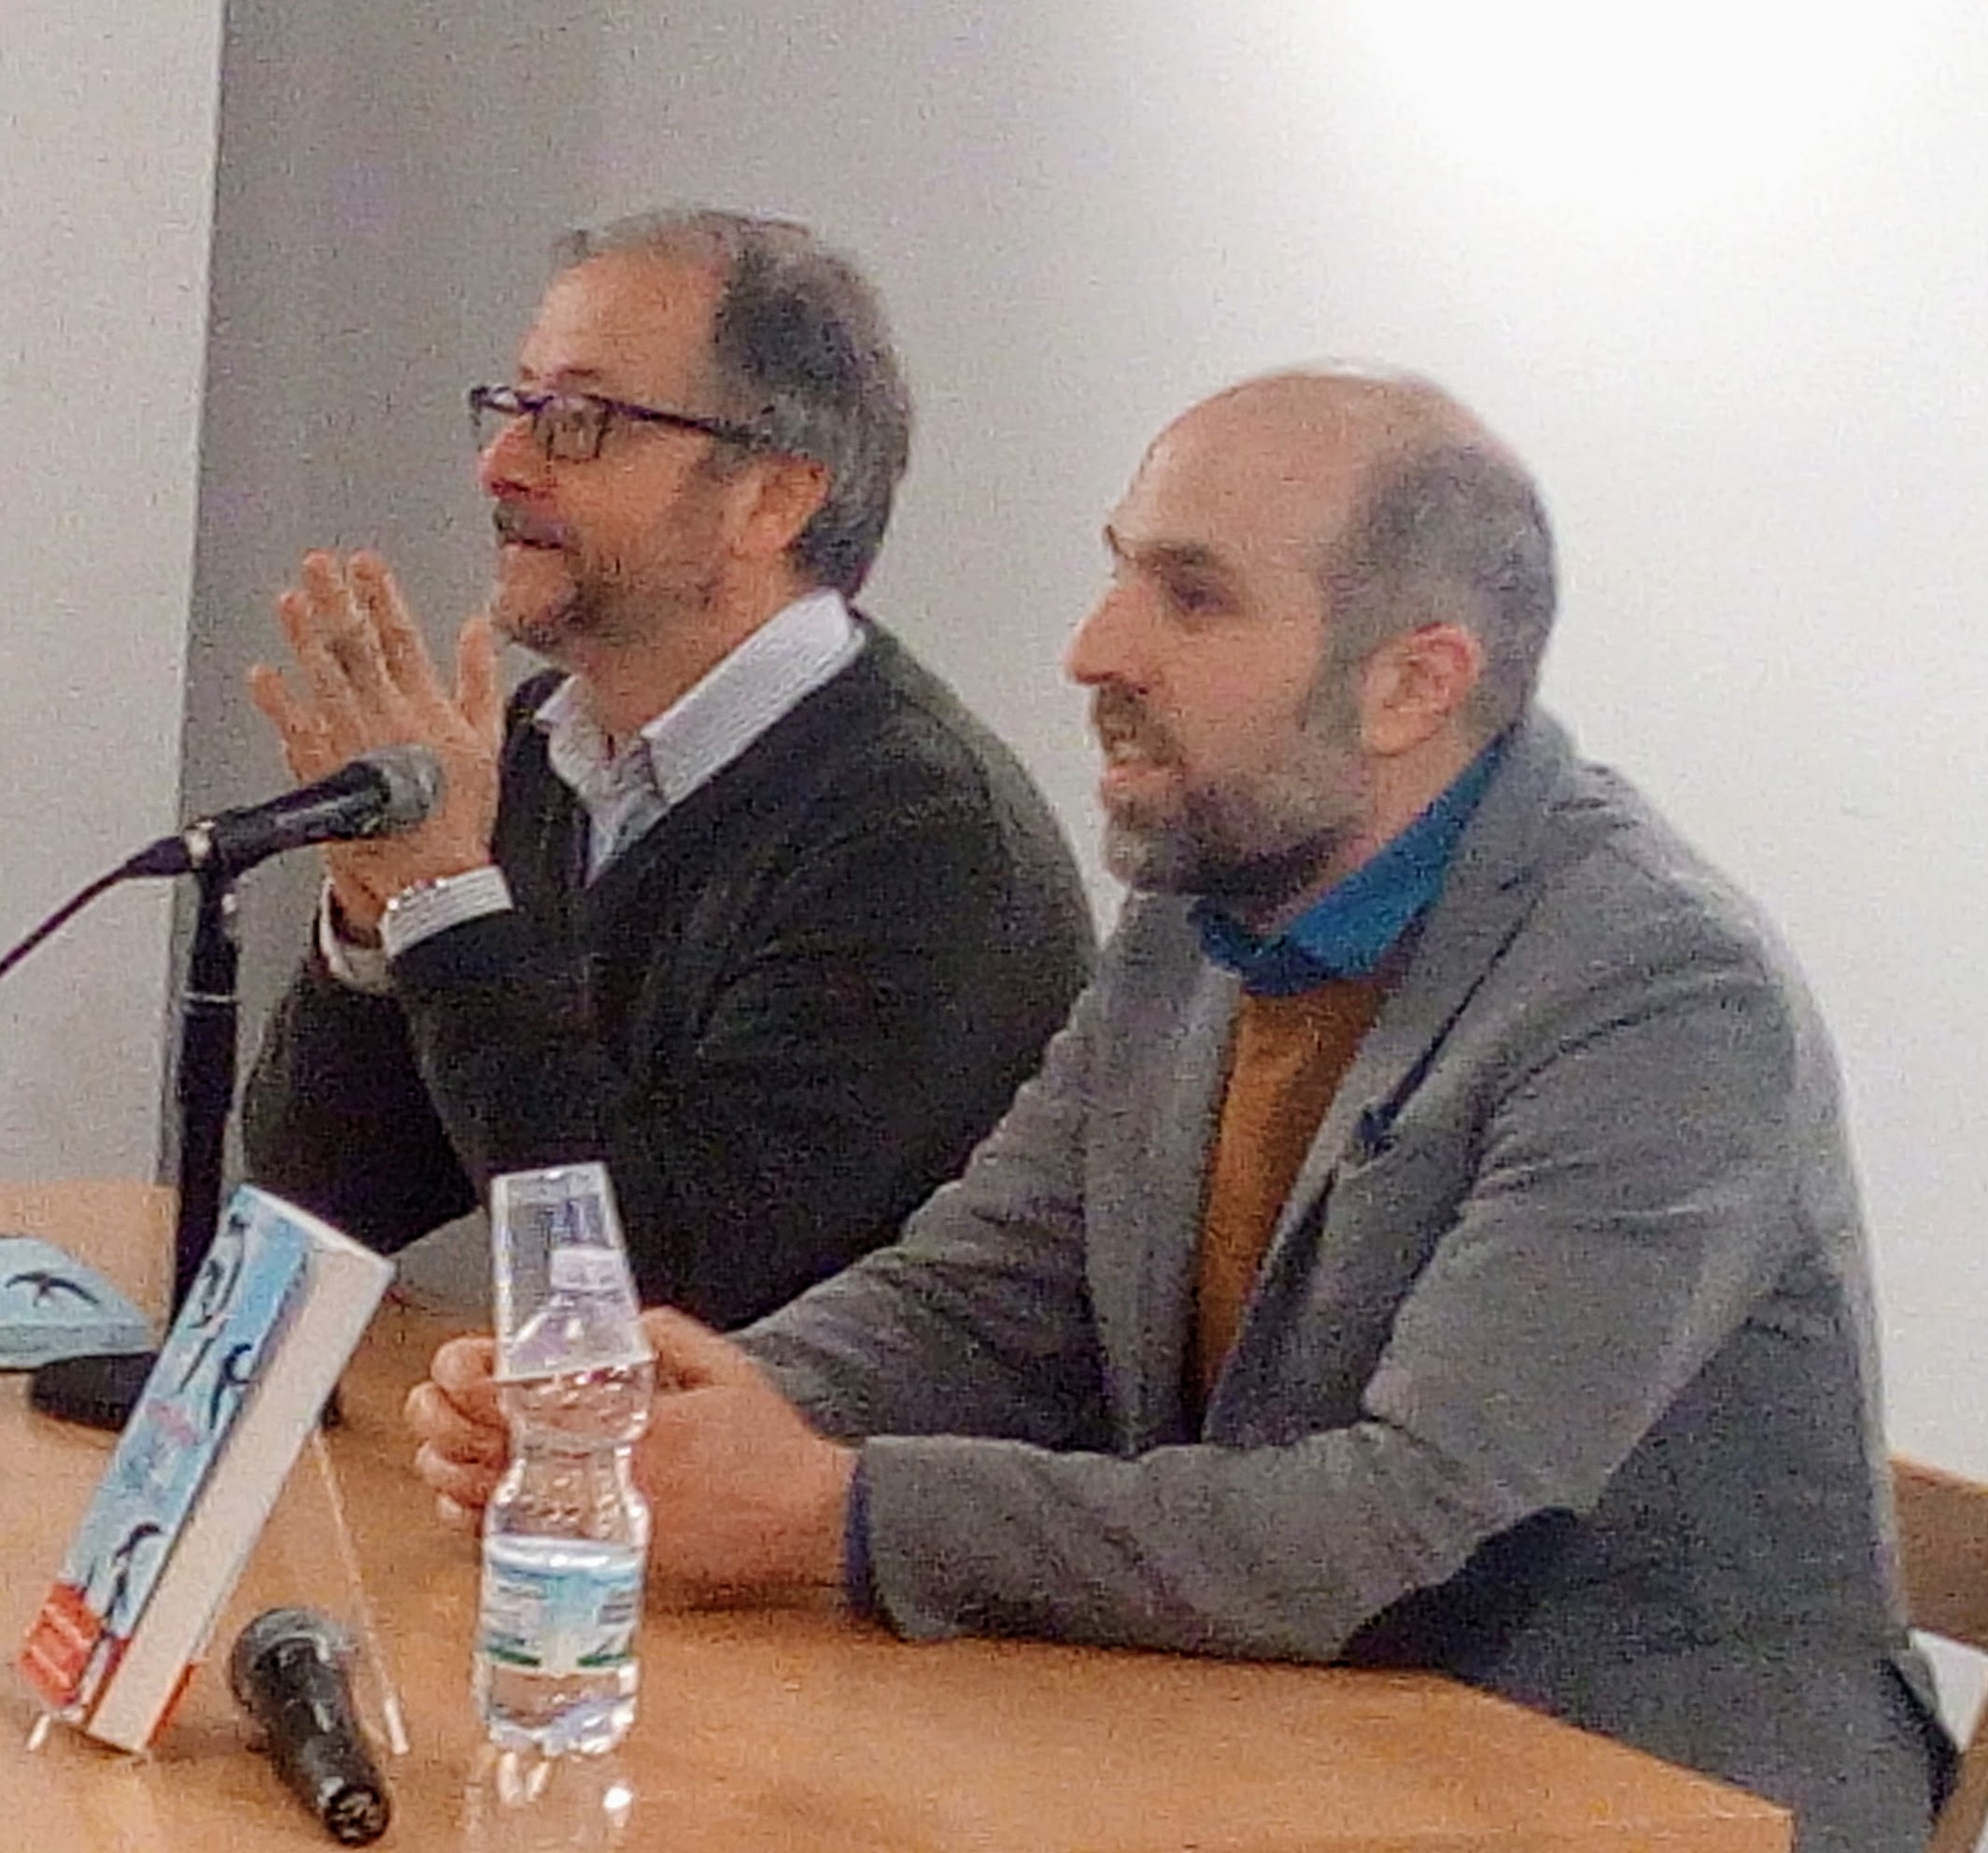 Lorenzo Marone e Diego De SIlva alla Feltrinelli di Napoli per presentare "Domani magari resto", il nuovo libro di Marone